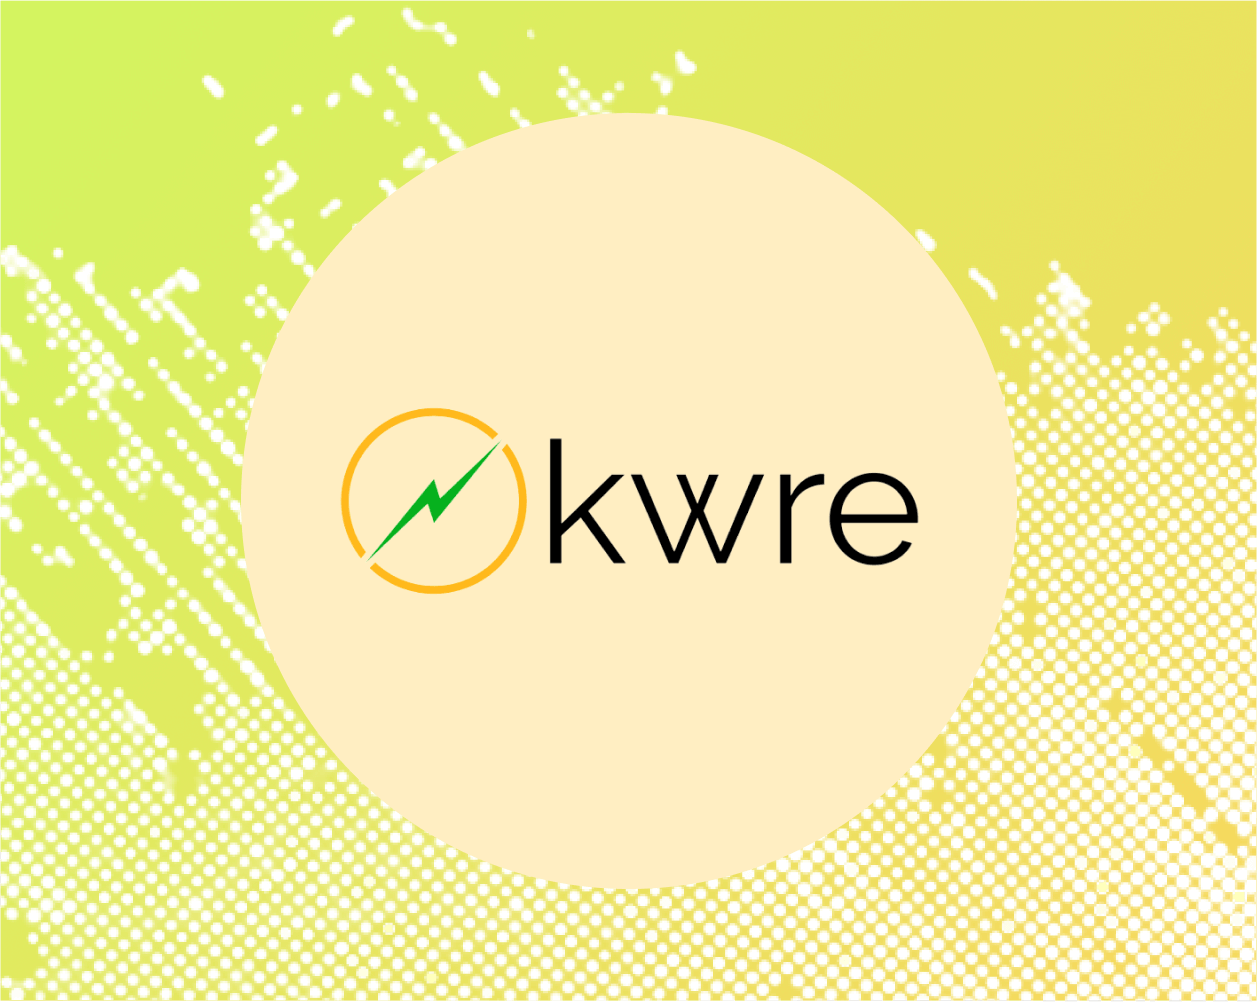 kwre Newable Engineering